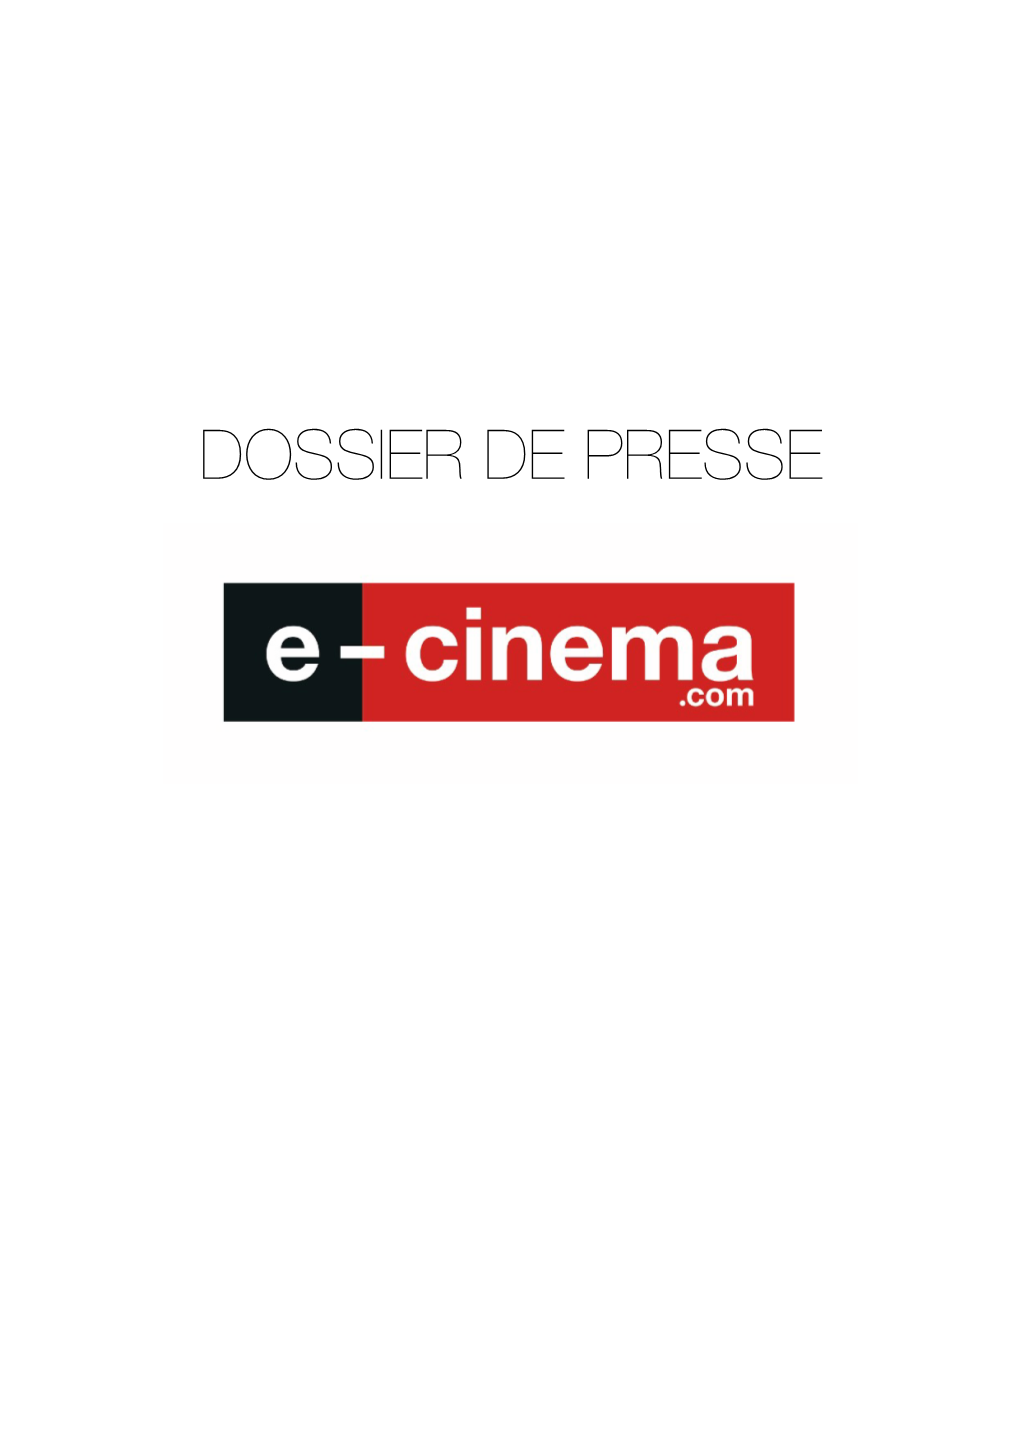 DOSSIER DE PRESSE Aujourd’Hui, Le Cinéma Disparaît Et Le but De Notre Plateforme, E-Cinema.Com, Est De Le Faire Réapparaître